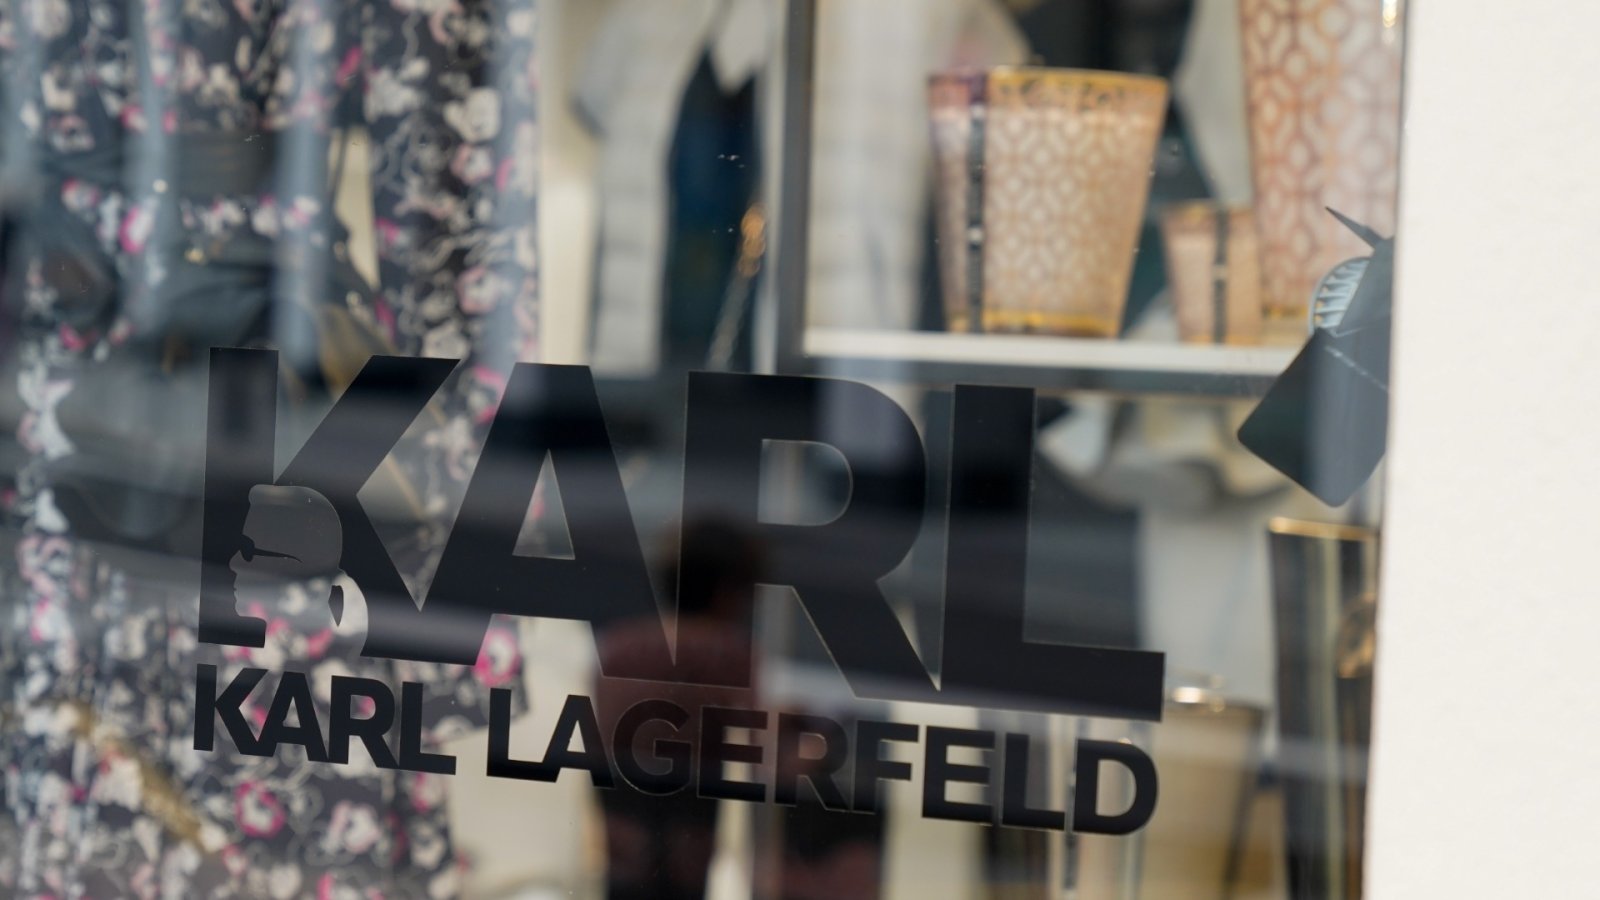 L'exposition de Karl Lagerfeld au Met présente la vision remarquable du créateur